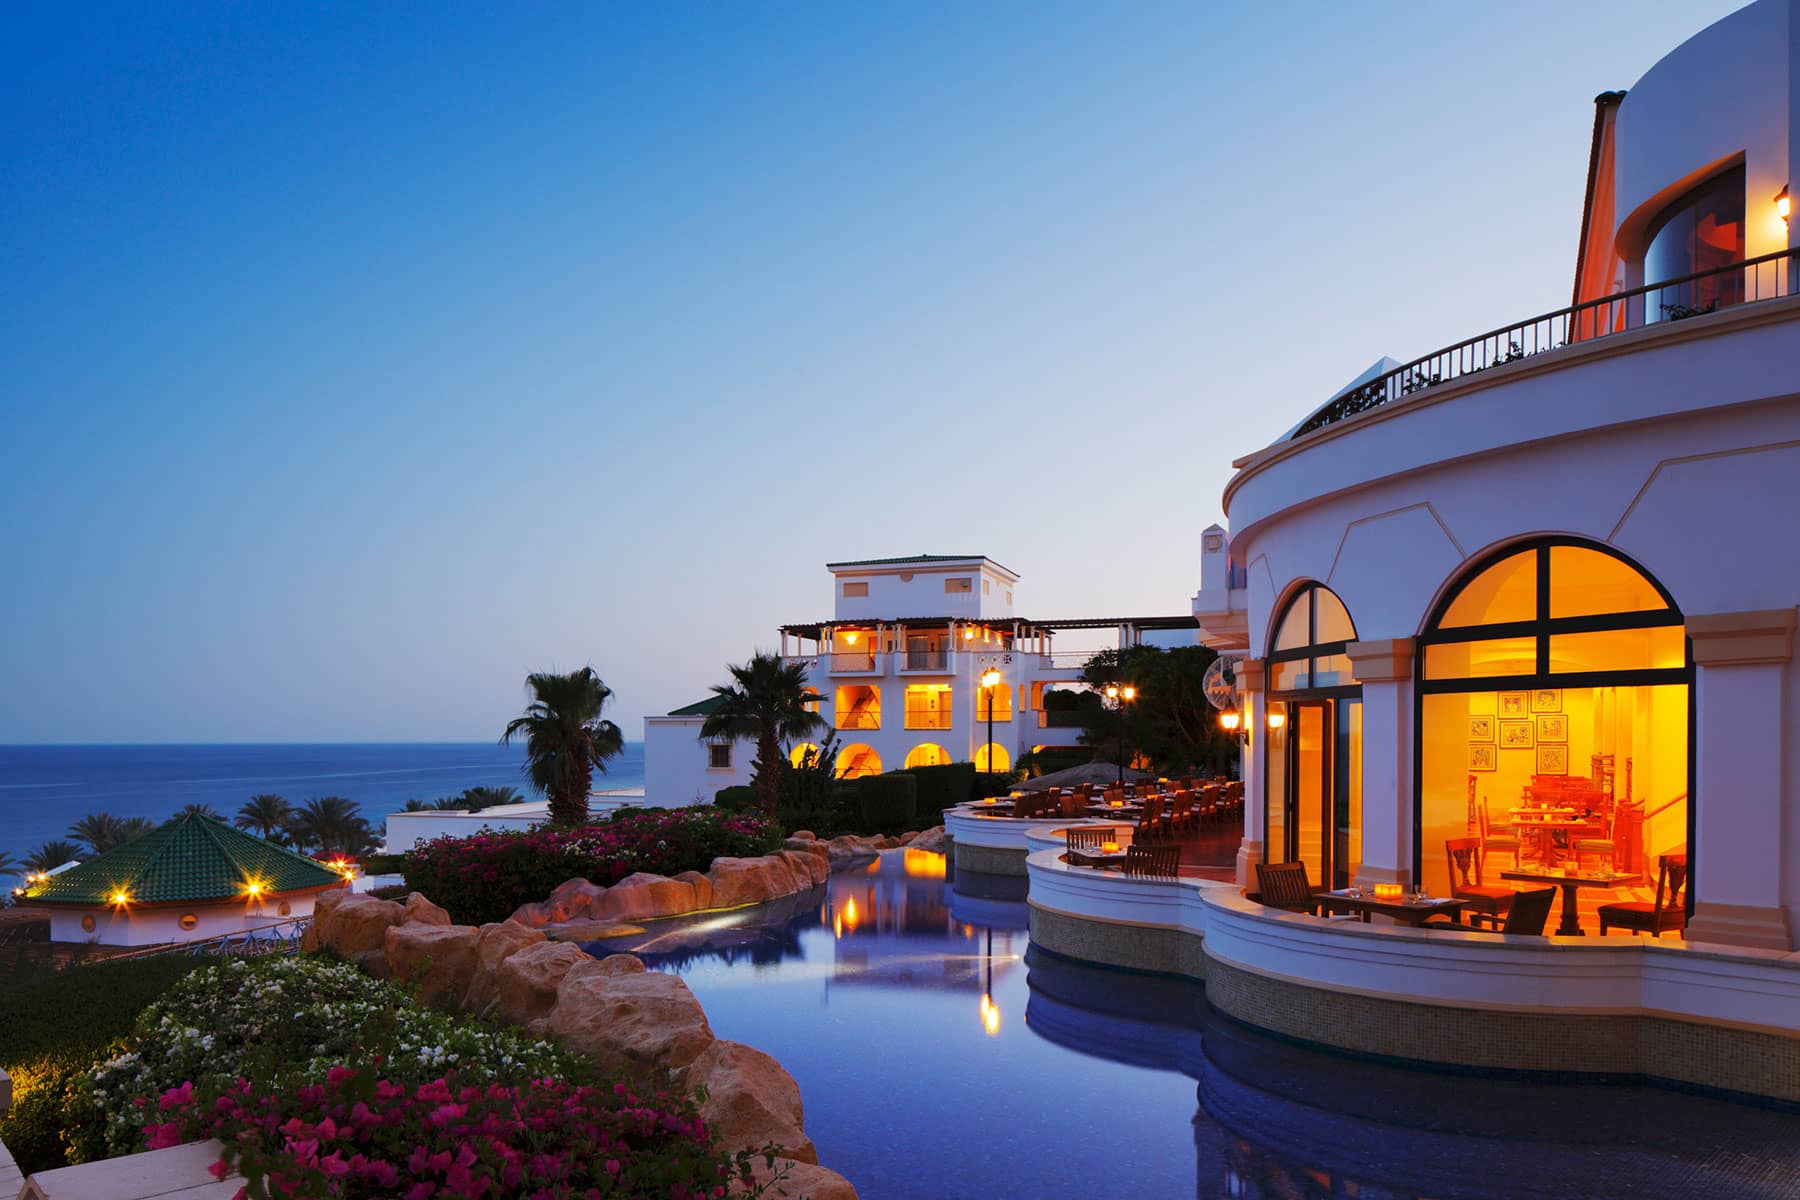 Hotel & Resort Photography: Hyatt Regency Resort, Sharm el Sheikh, Egypt.